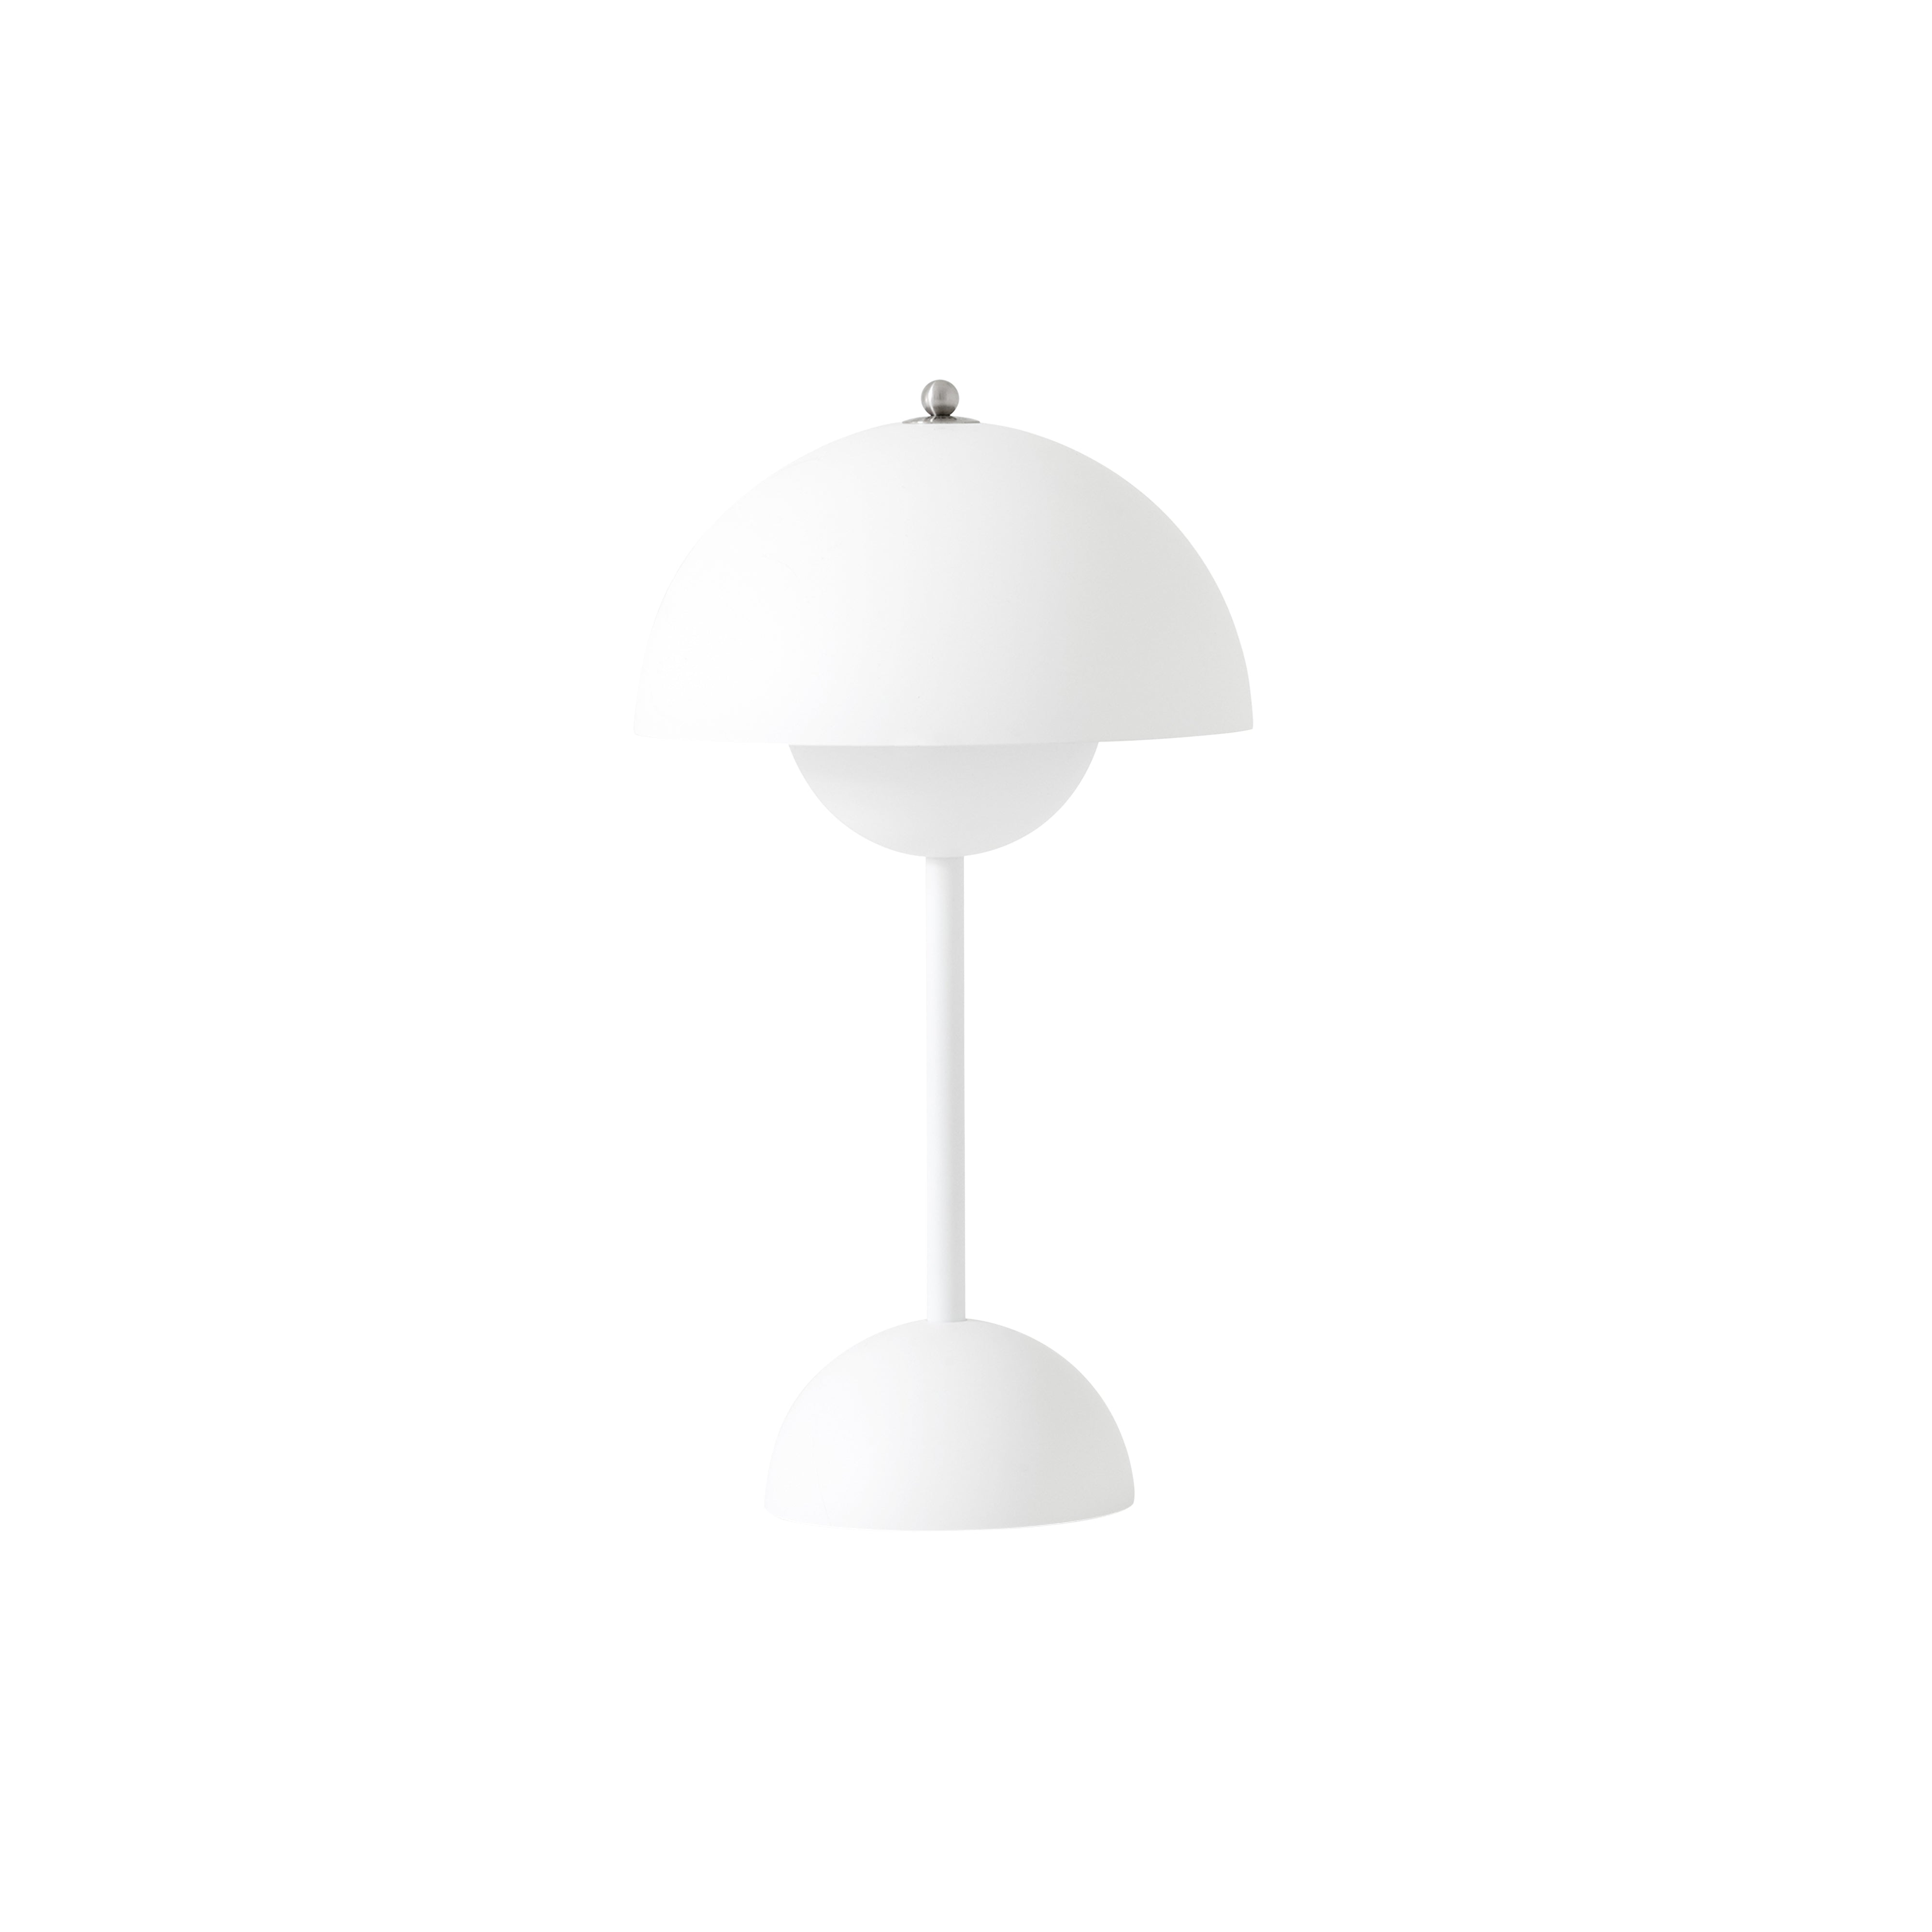 Flowerpot Portable Table Lamp: VP9 + Matt White